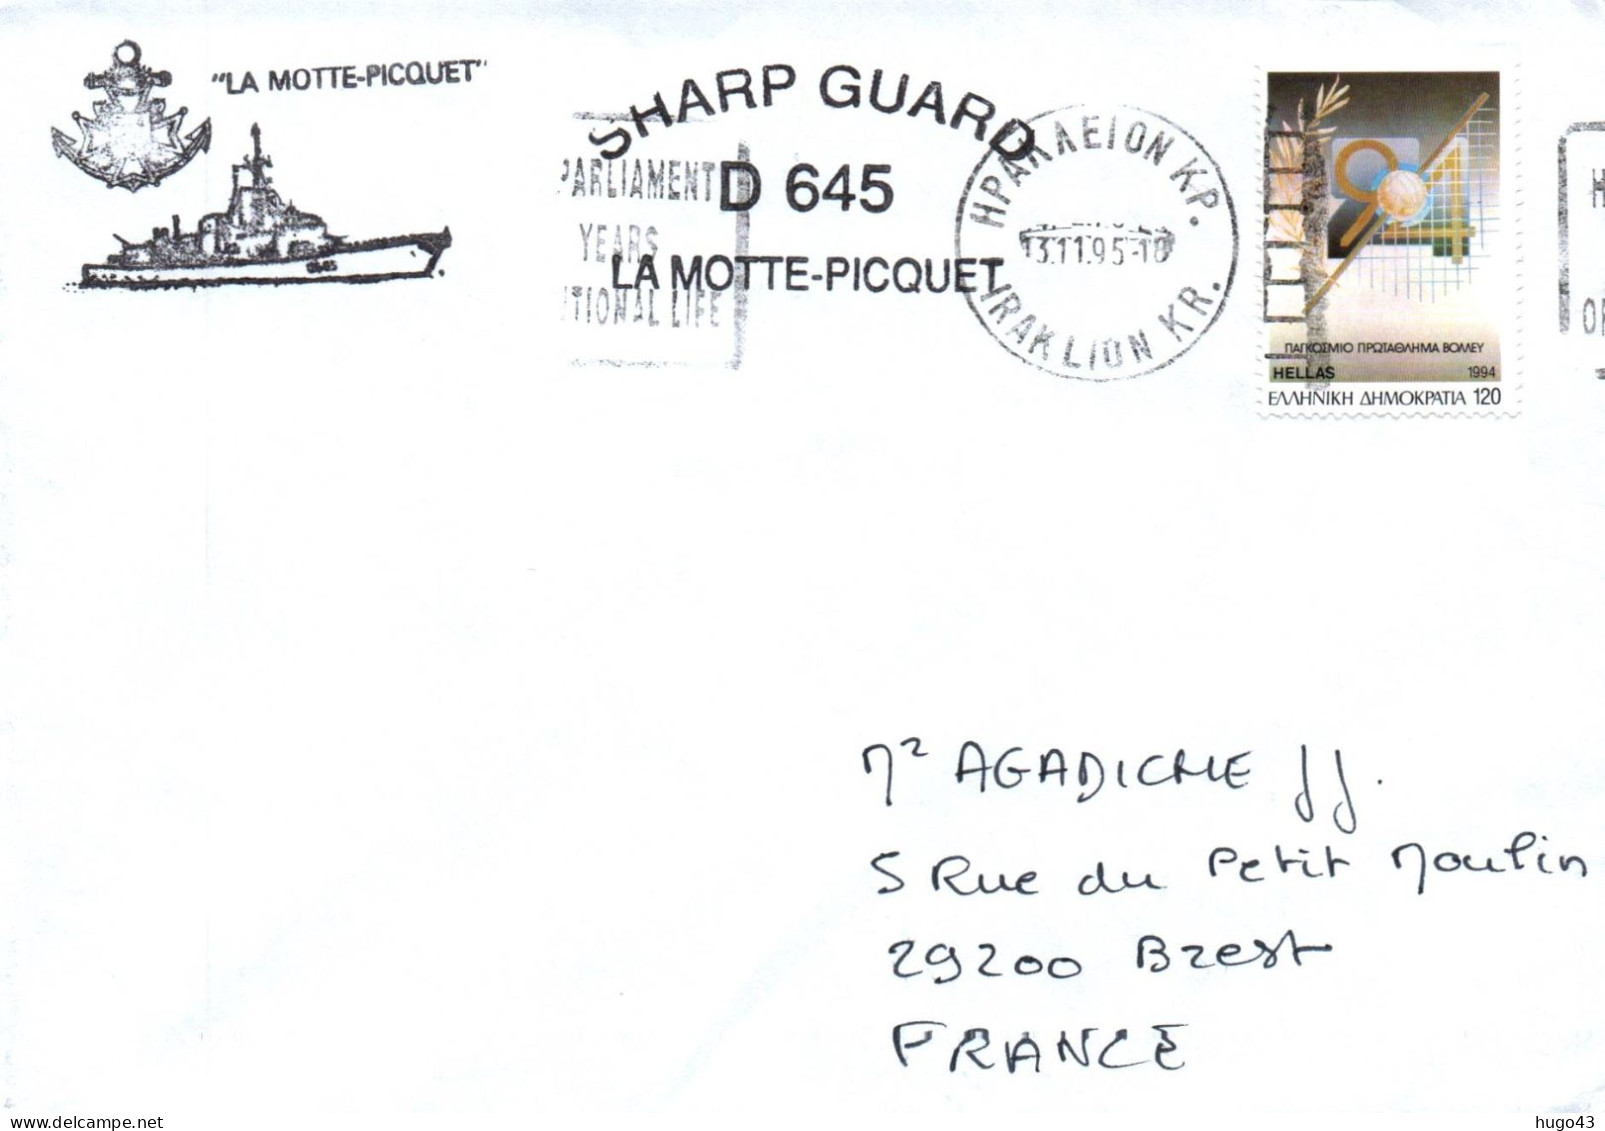 ENVELOPPE AVEC CACHET FREGATE FASM LA MOTTE PICQUET - SHARP GUARD D645 - ESCALE EN GRECE LE 13/11/1995 - Naval Post